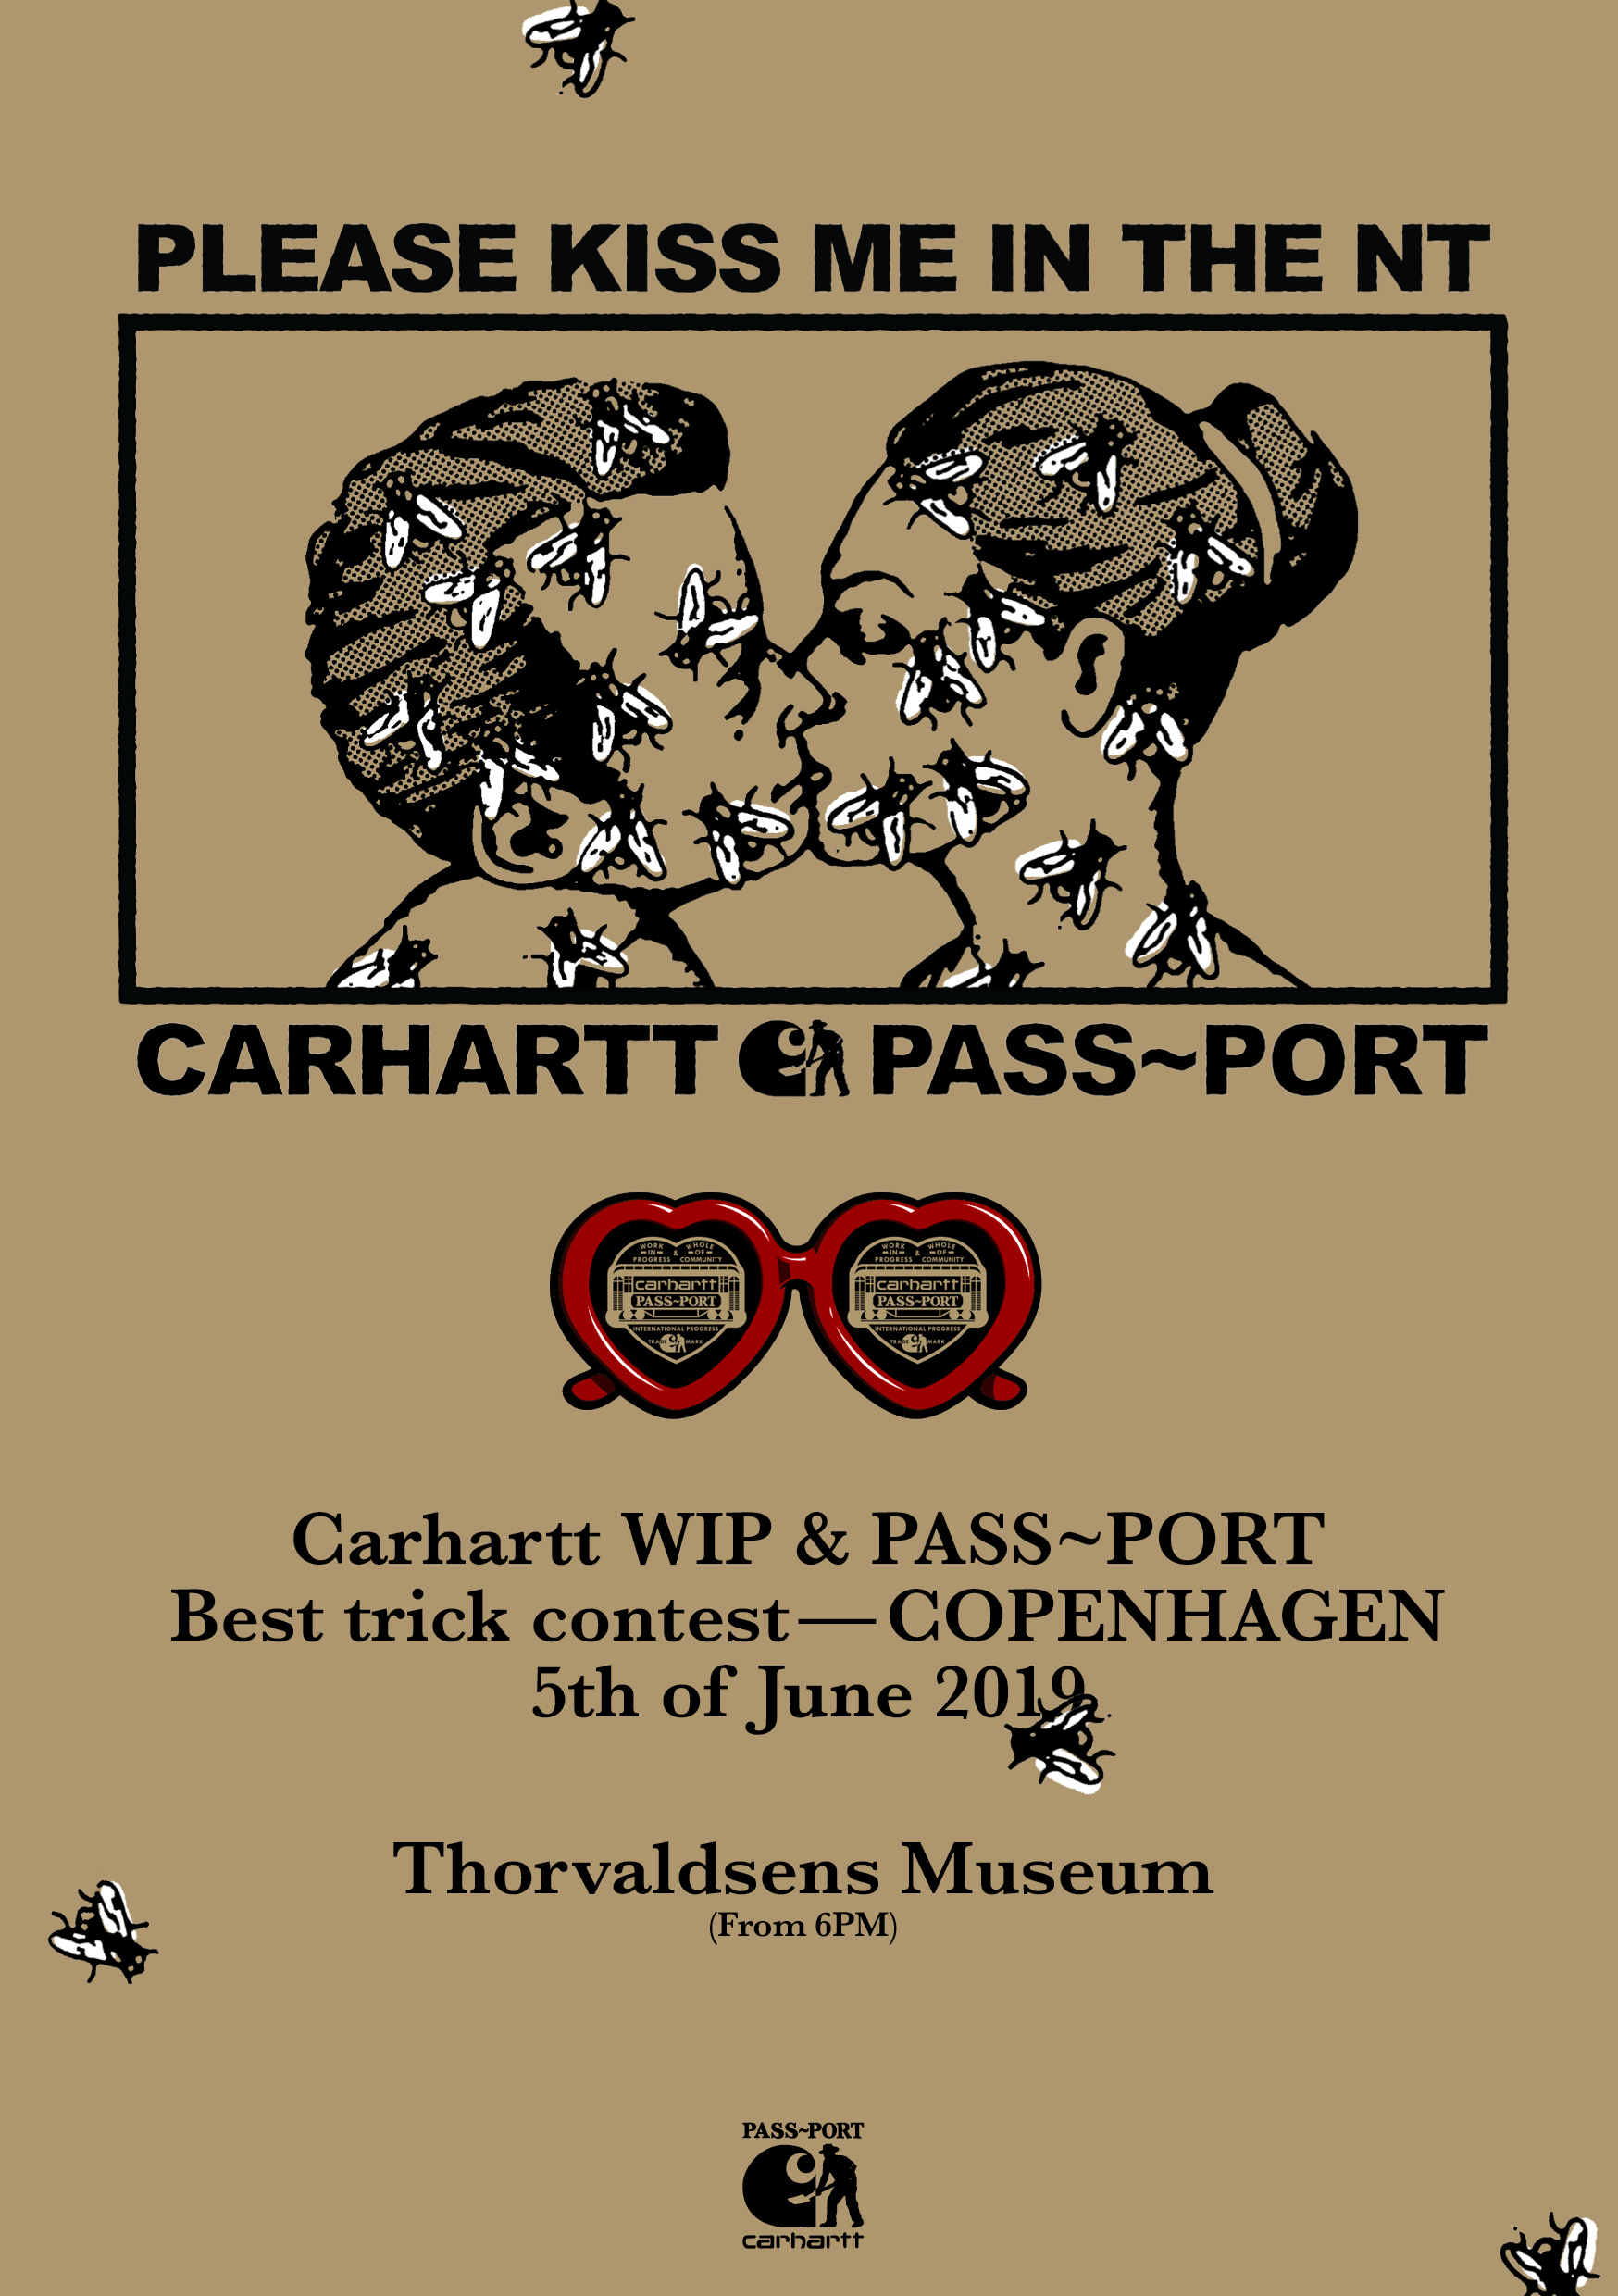 CarharttWIPxPassport_Digital_Flyer_Copenhagen_CPH